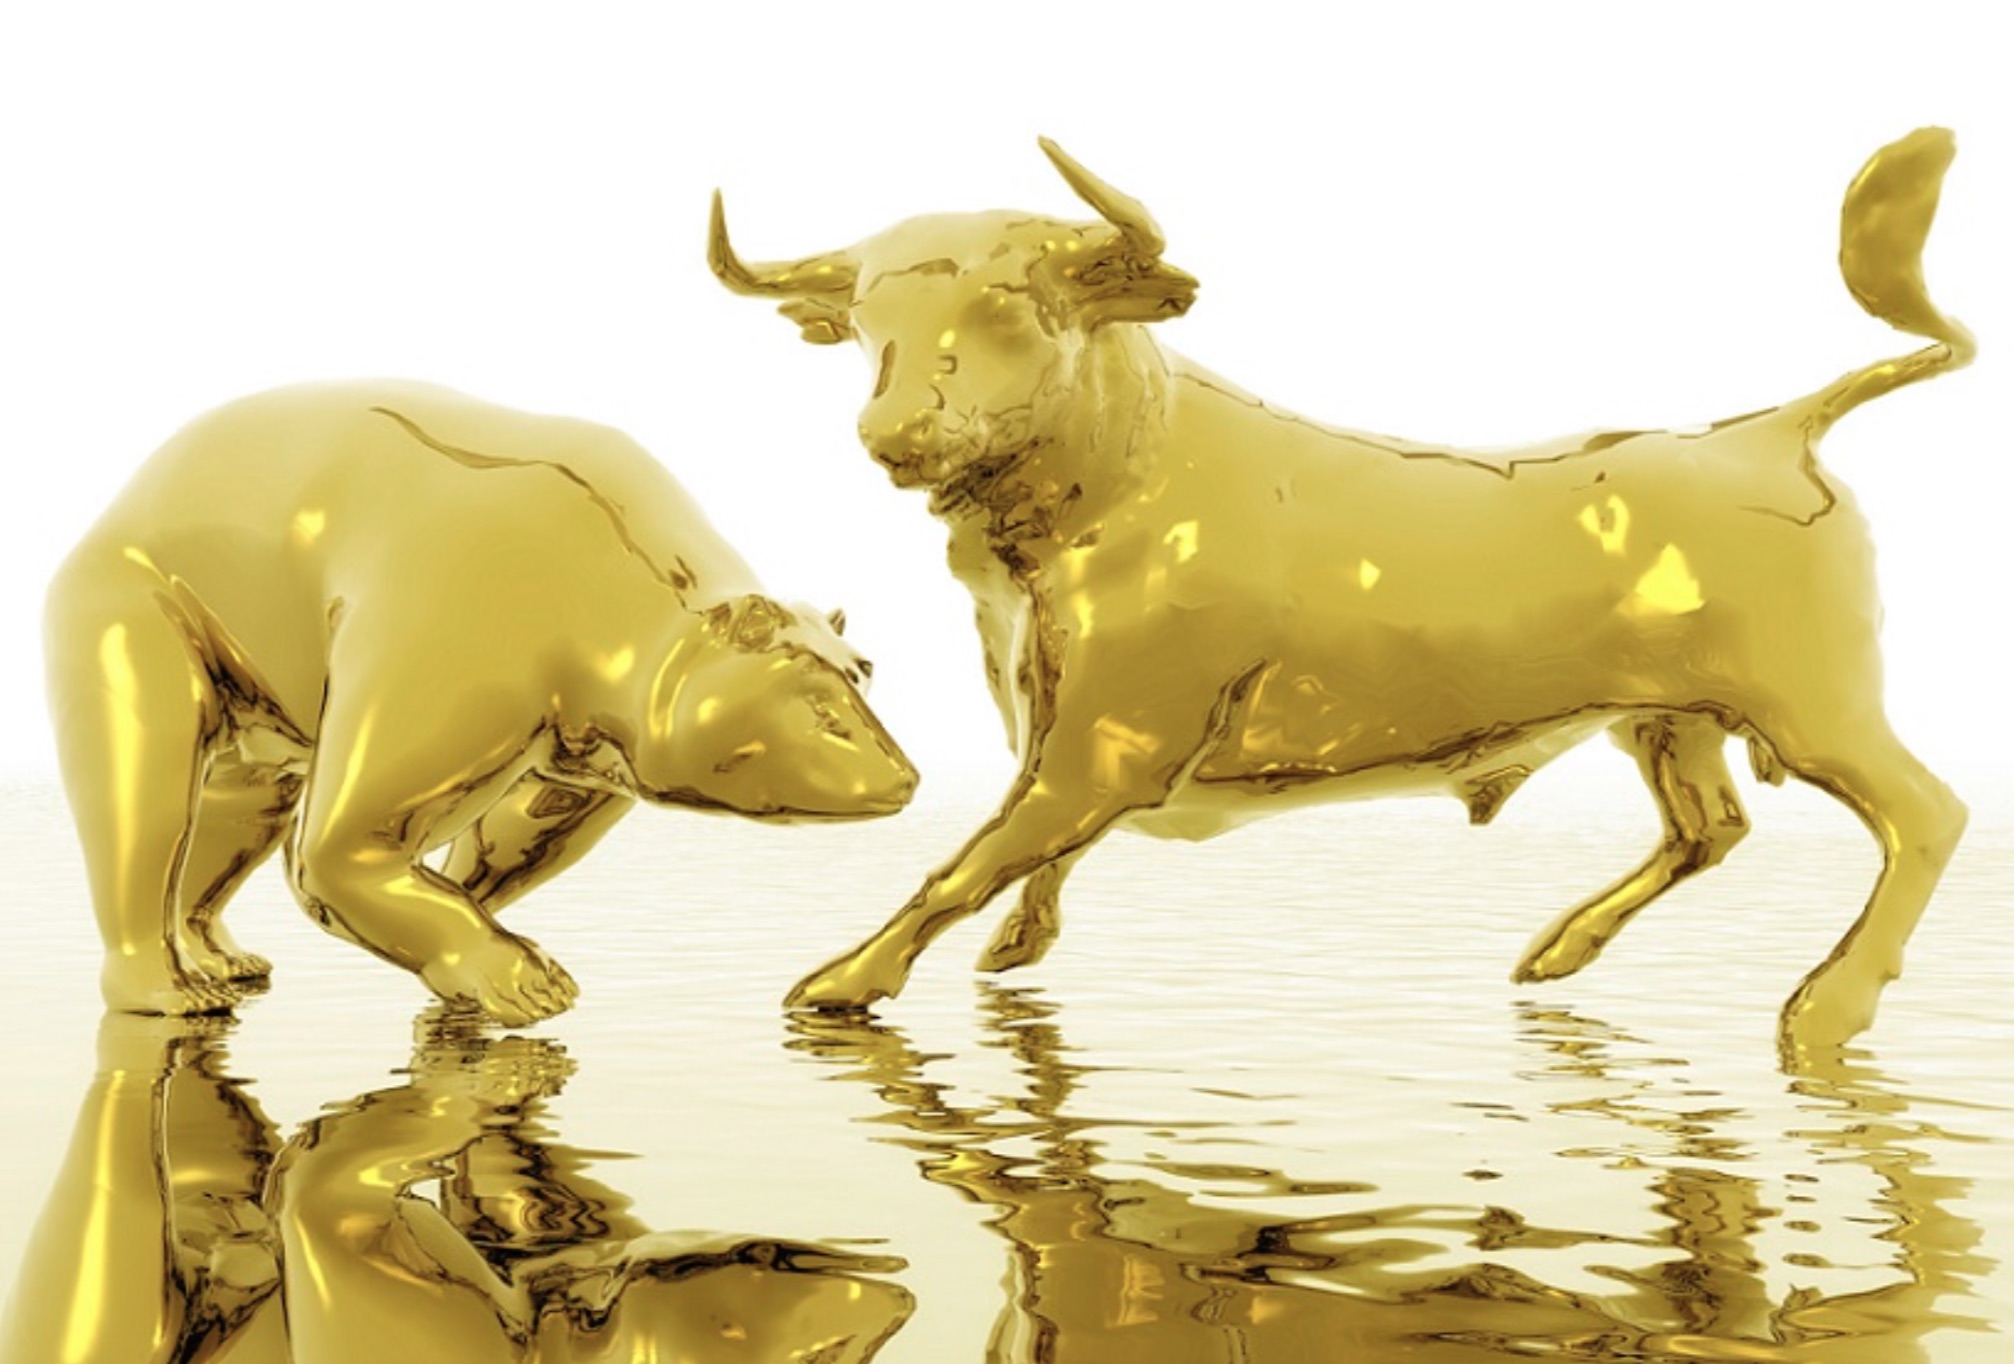 King World News -Major Update As Gold Bulls Attempt To Halt Recent Decline